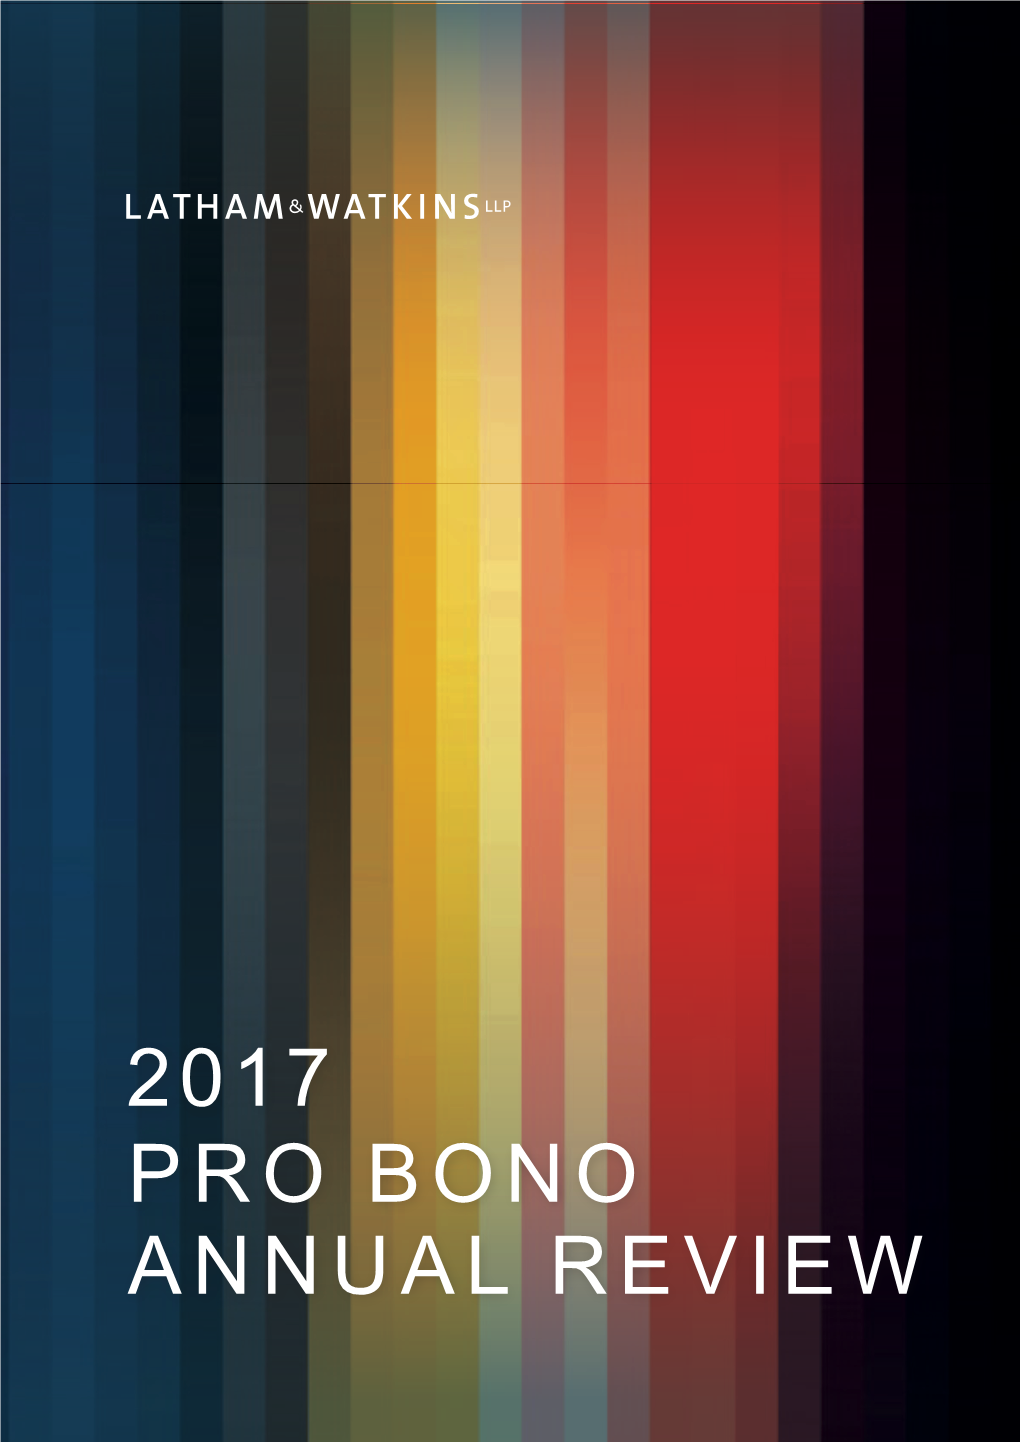 Annual Review Pro Bono 2017